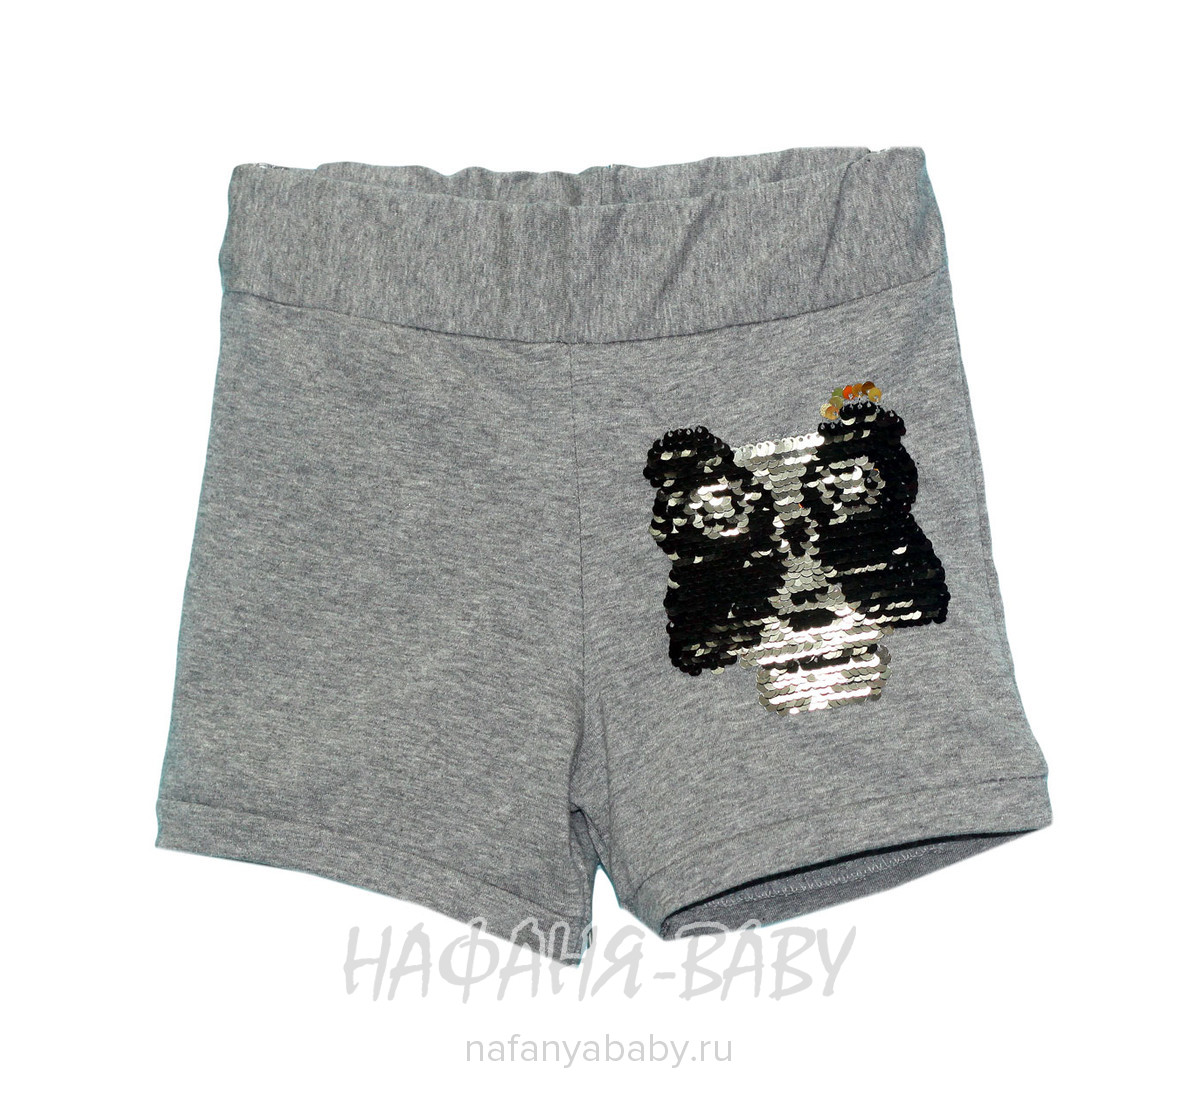 Трикотажные шорты с паетками LILY Kids, купить в интернет магазине Нафаня. арт: 6041.